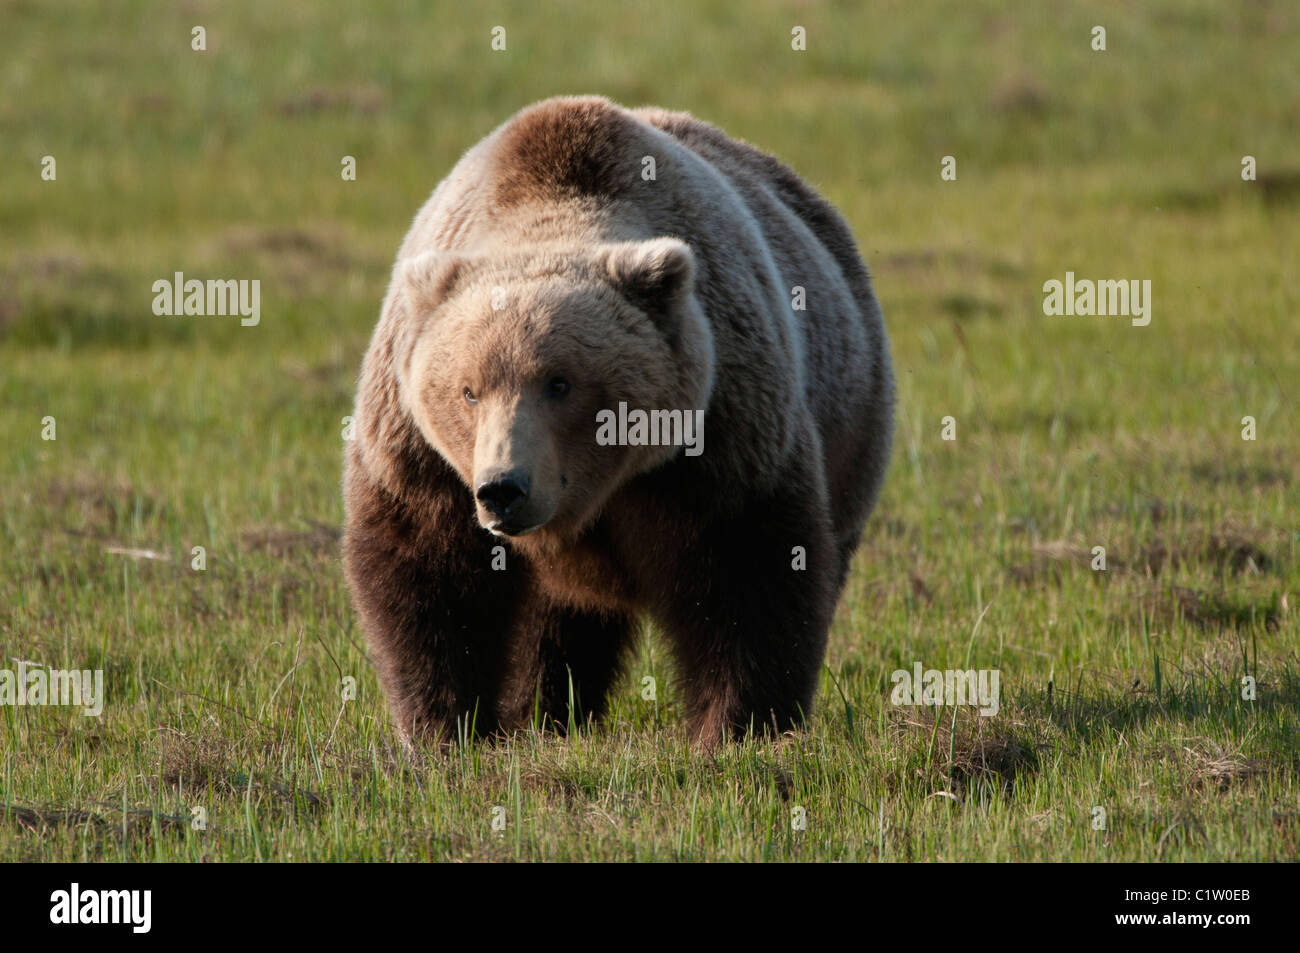 Kodiak brown bear (Ursus arctos middendorffi) foraging, Swikshak, Katami Coast, Alaska, USA Stock Photo